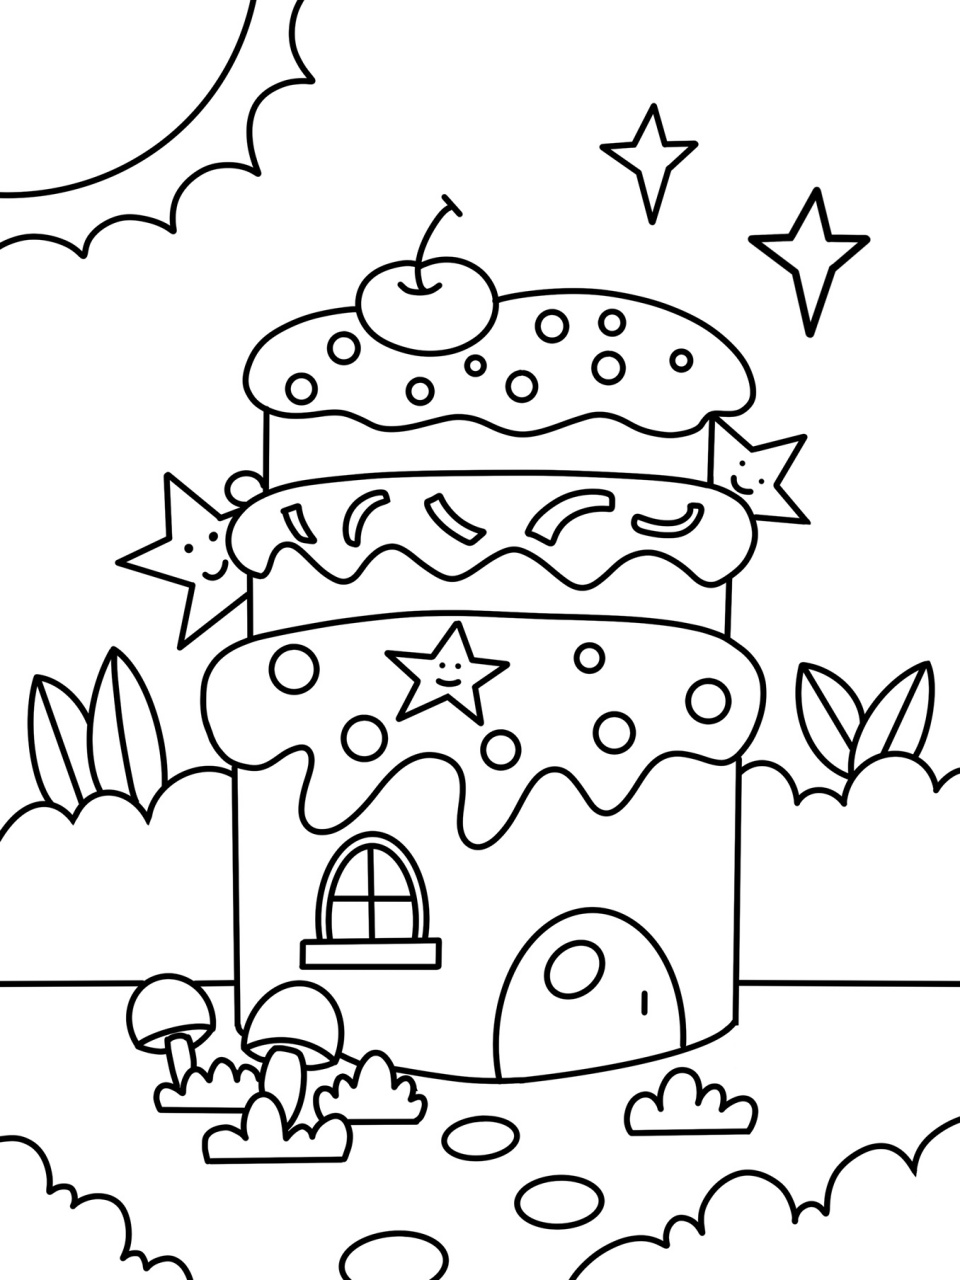 蛋糕屋 蛋糕房子 房子 创意画 儿童画 简笔 